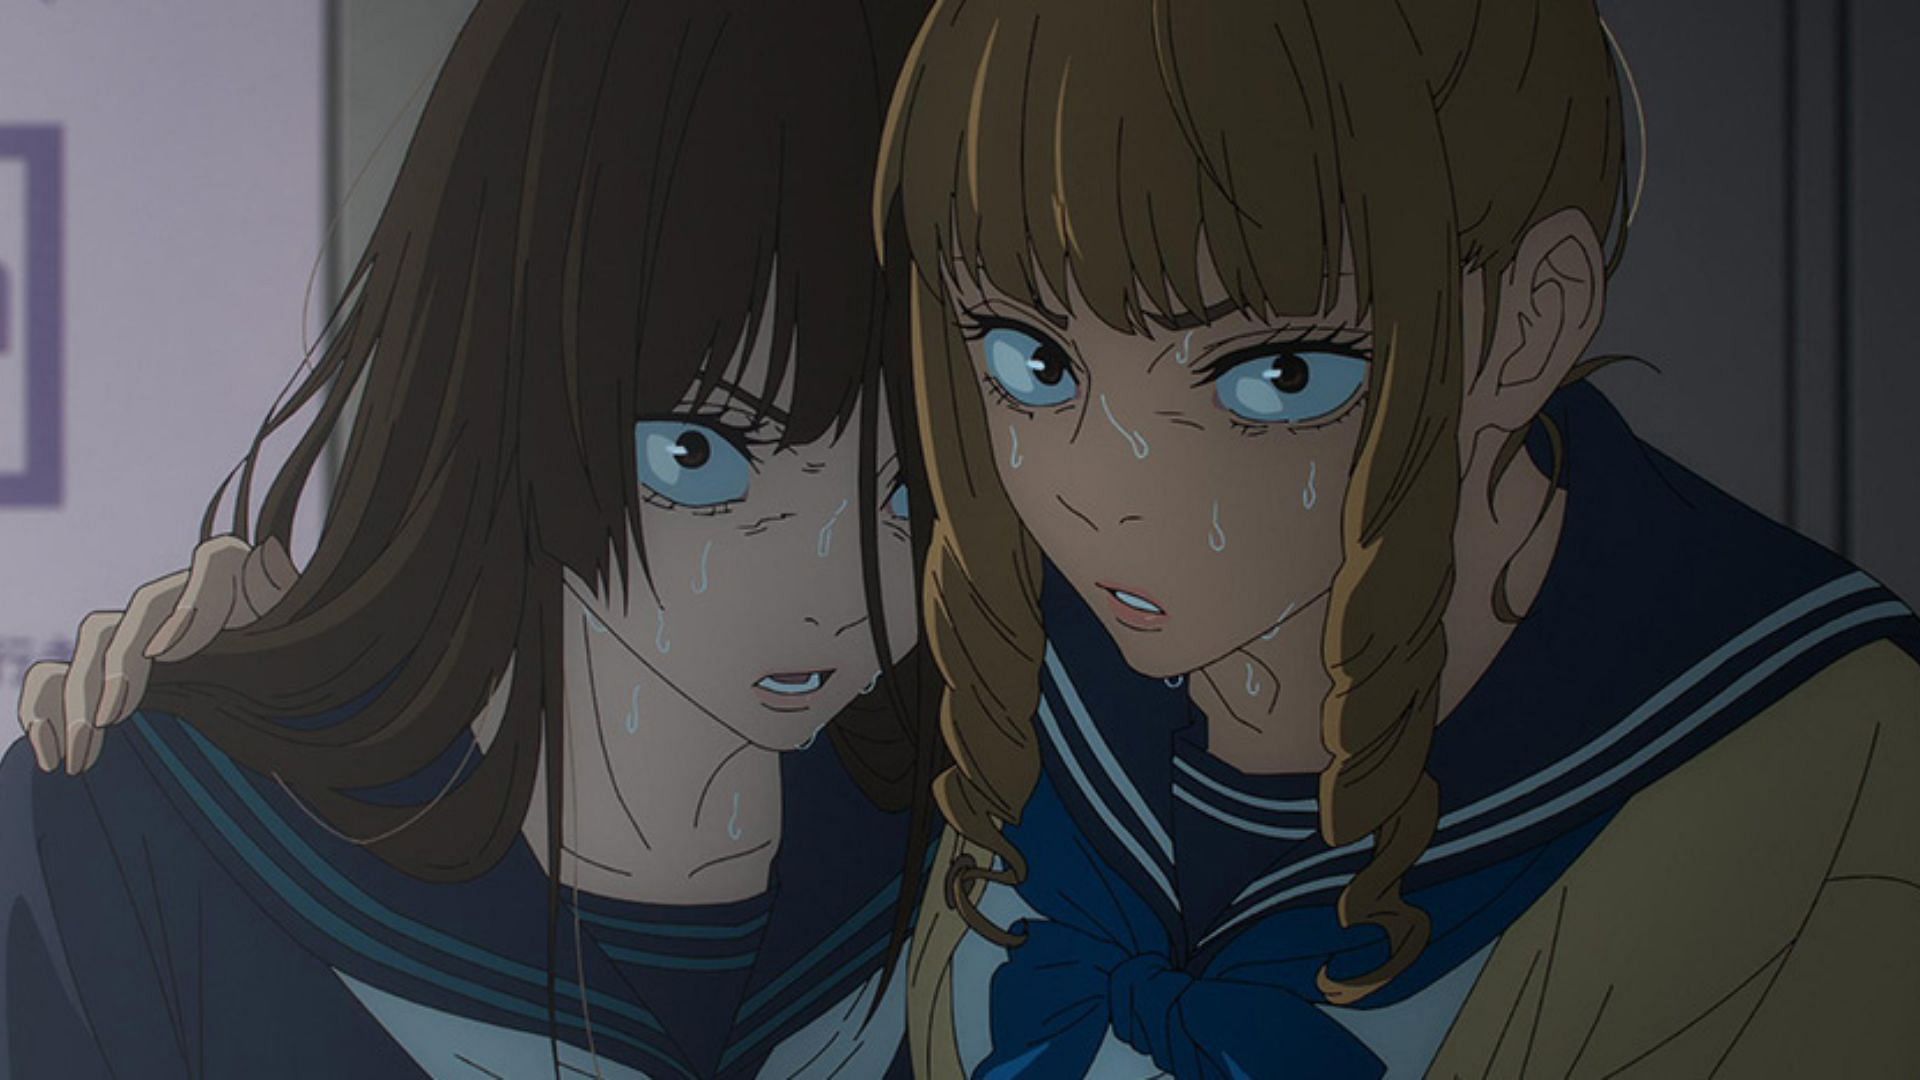 Mimiko and Nanako as seen in Jujutsu Kaisen season 2 (Image via MAPPA)